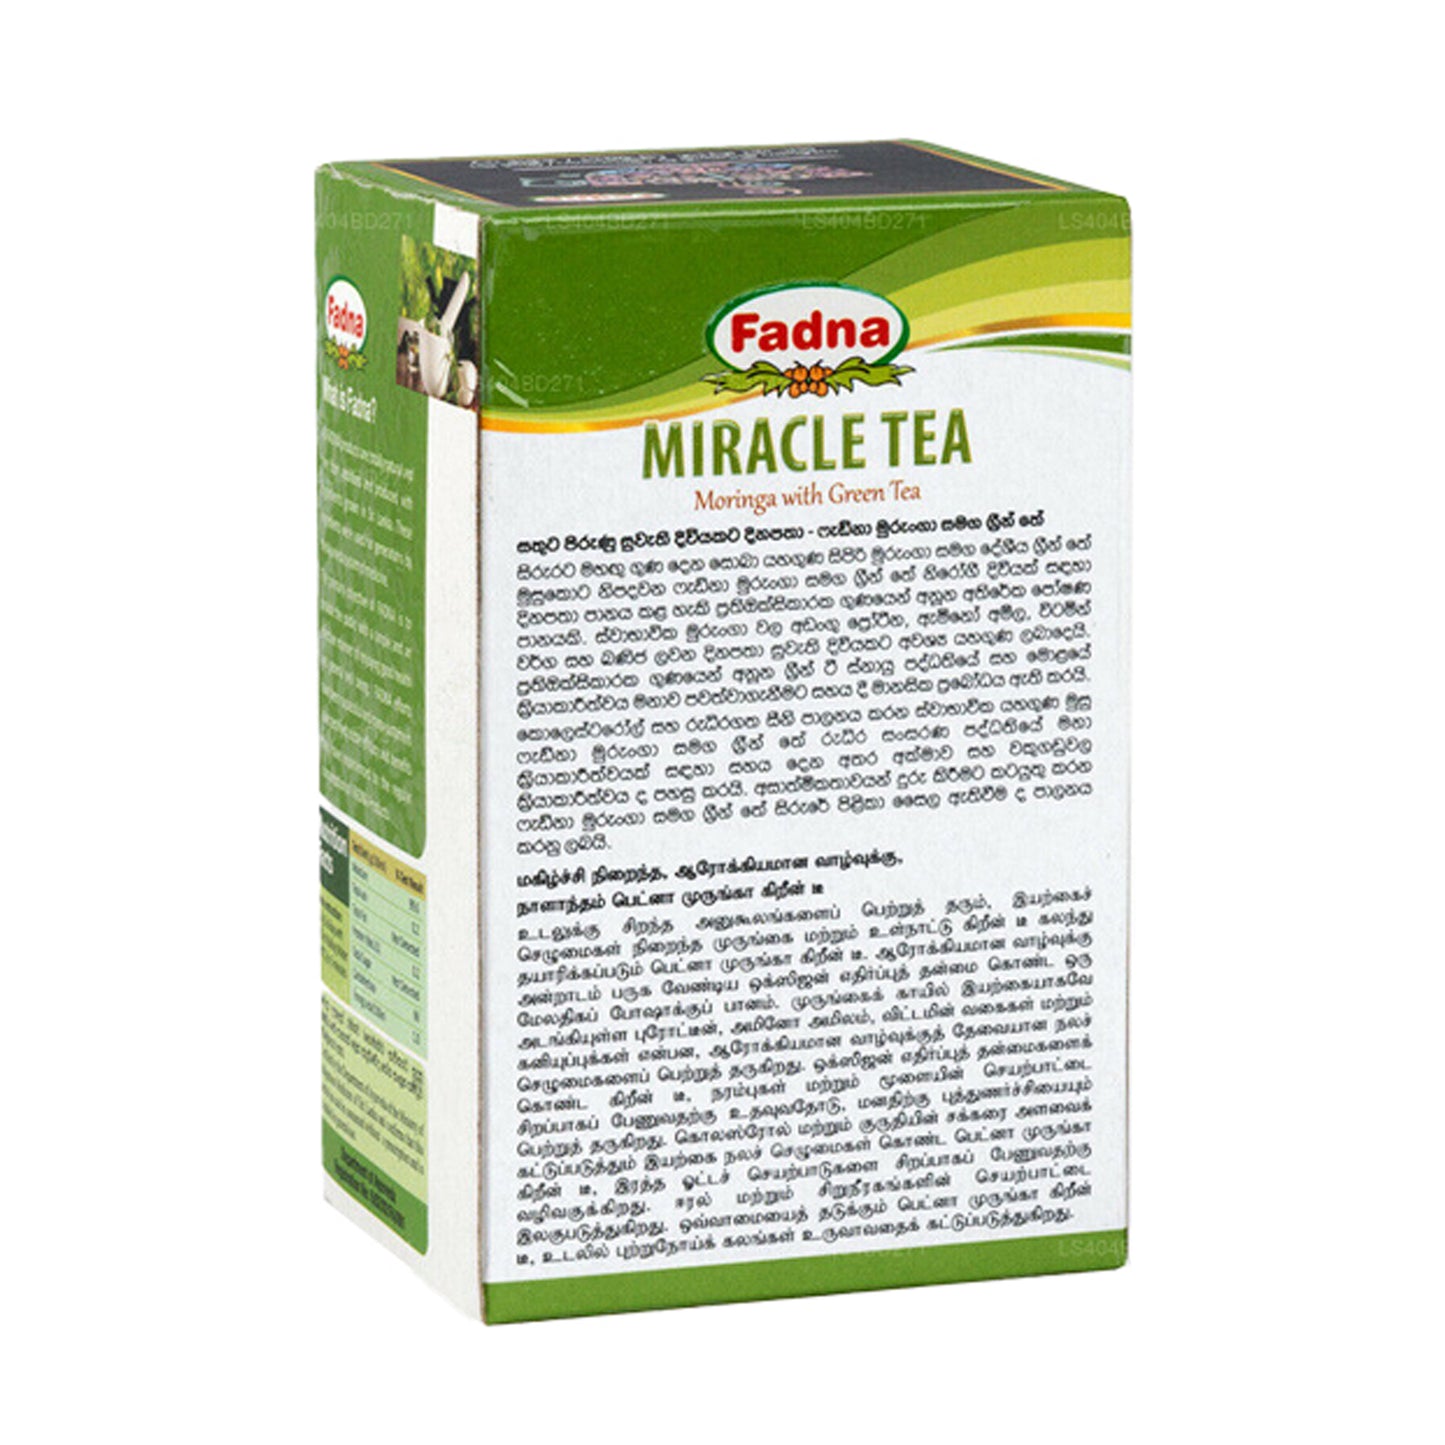 Fadna Miracle Tea Moringa med grøn te (40g) 20 teposer